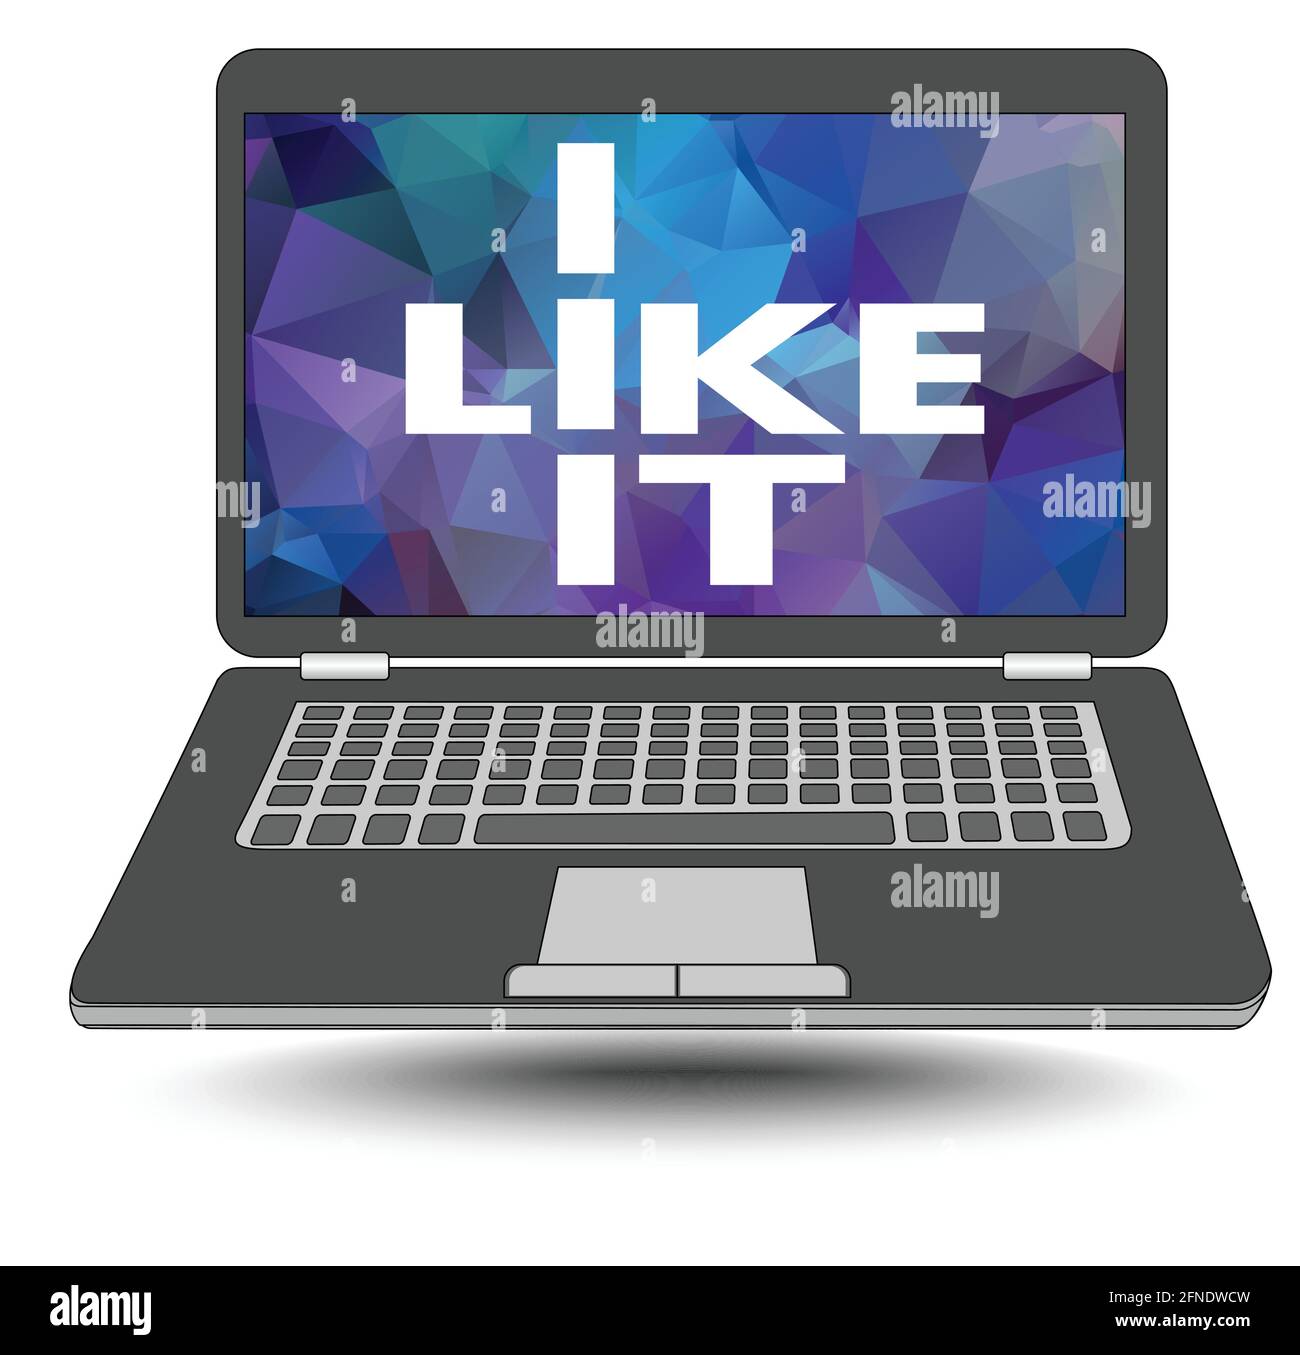 Mi piace. Mi piace l'informatica. Laptop con un'iscrizione bianca su sfondo poligonale. Elemento banner pubblicitario per venditori di inf Illustrazione Vettoriale